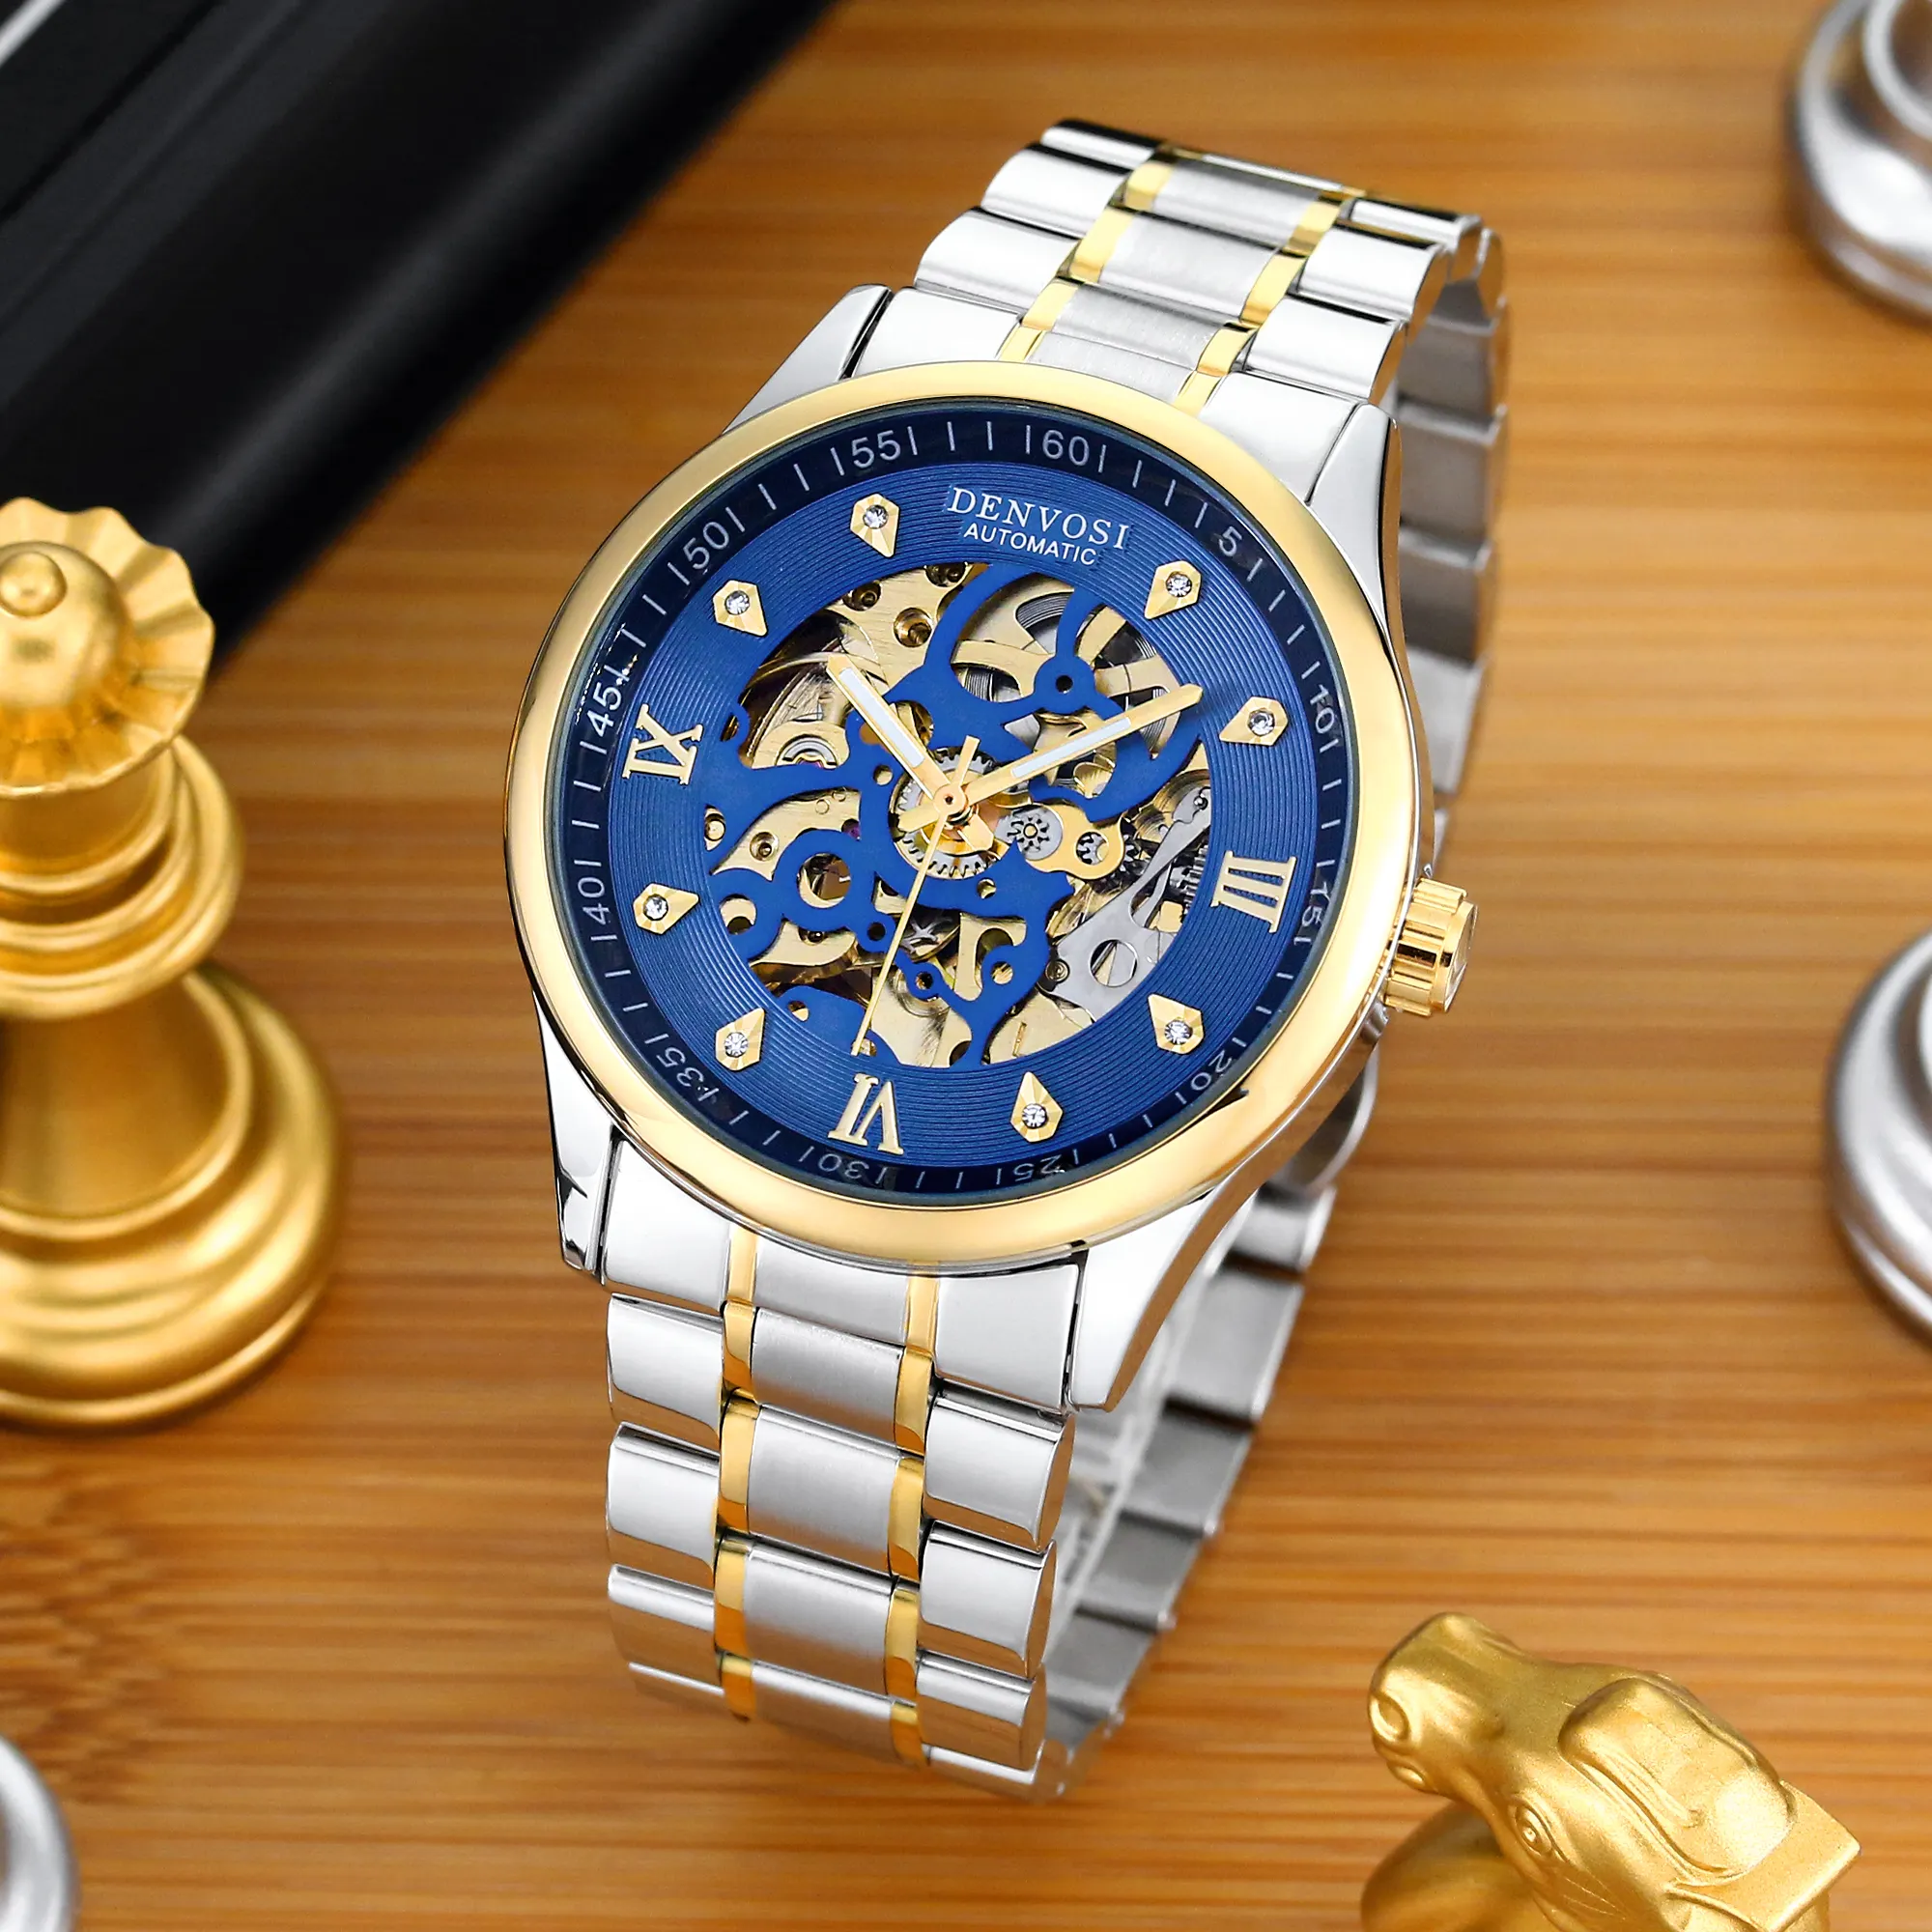 นาฬิกาข้อมือแฟชั่นชุบทองสำหรับผู้ชายหรูหราโลโก้ตามสั่งสไตล์เดนมาร์ก